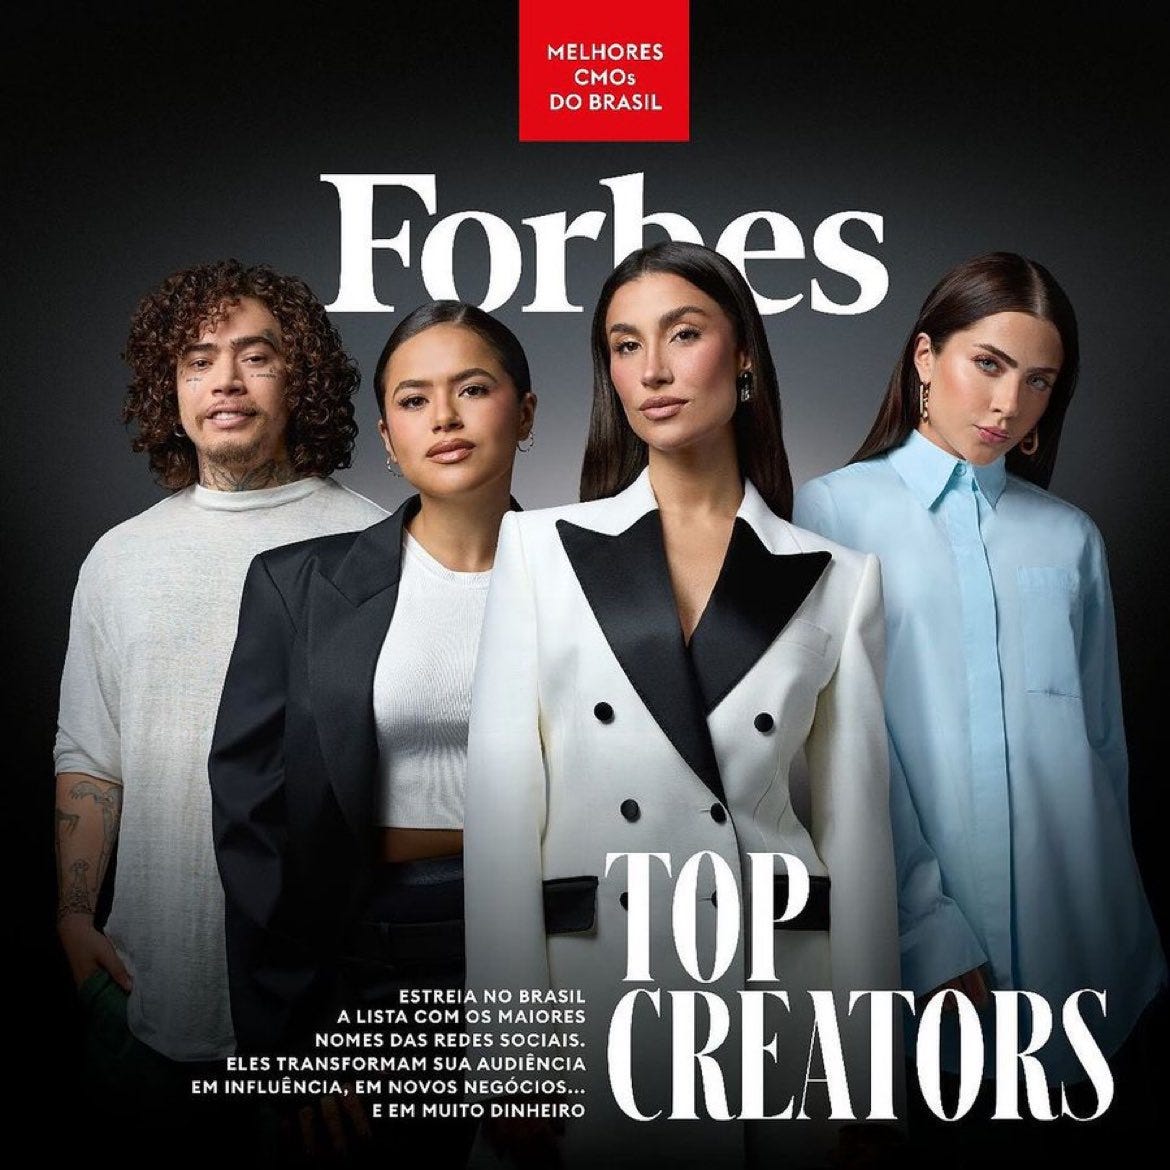 CHOQUEI on X: "🚨FAMOSOS: Whindersson Nunes, Maisa, Bianca Andrade e Jade  Picon foram a capa da Forbes Brasil na edição 'Top Creators'. De acordo com  a revista, esses foram alguns dos nomes